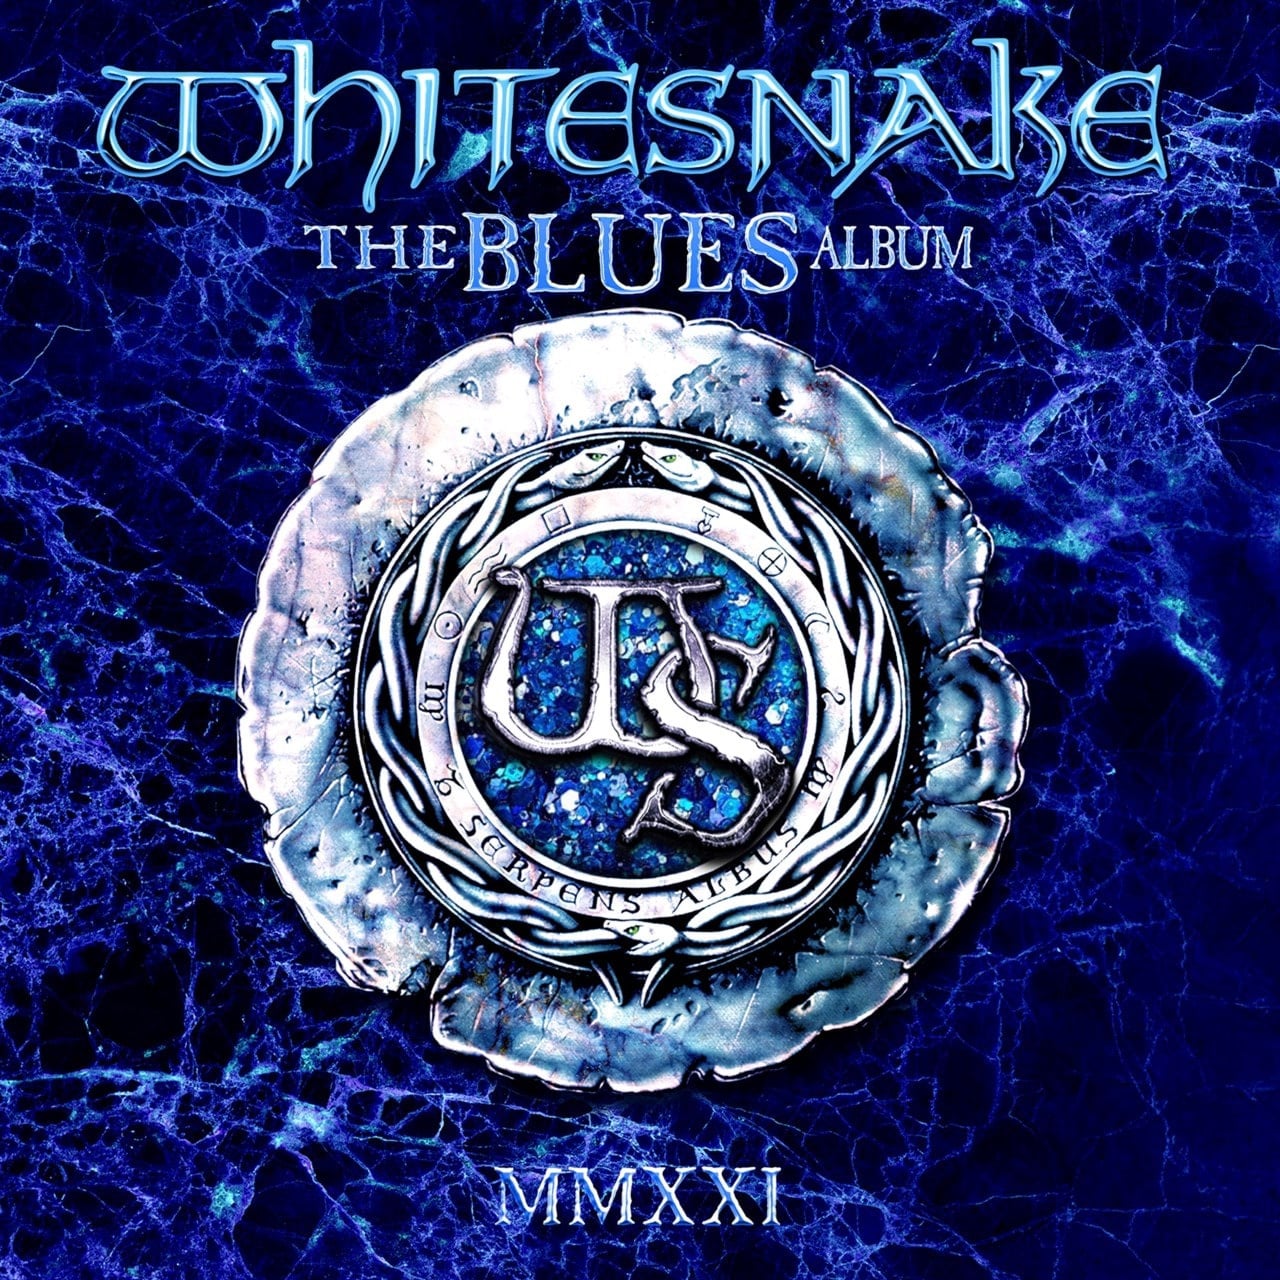 Whitesnake The BLUES Album - MMXXI